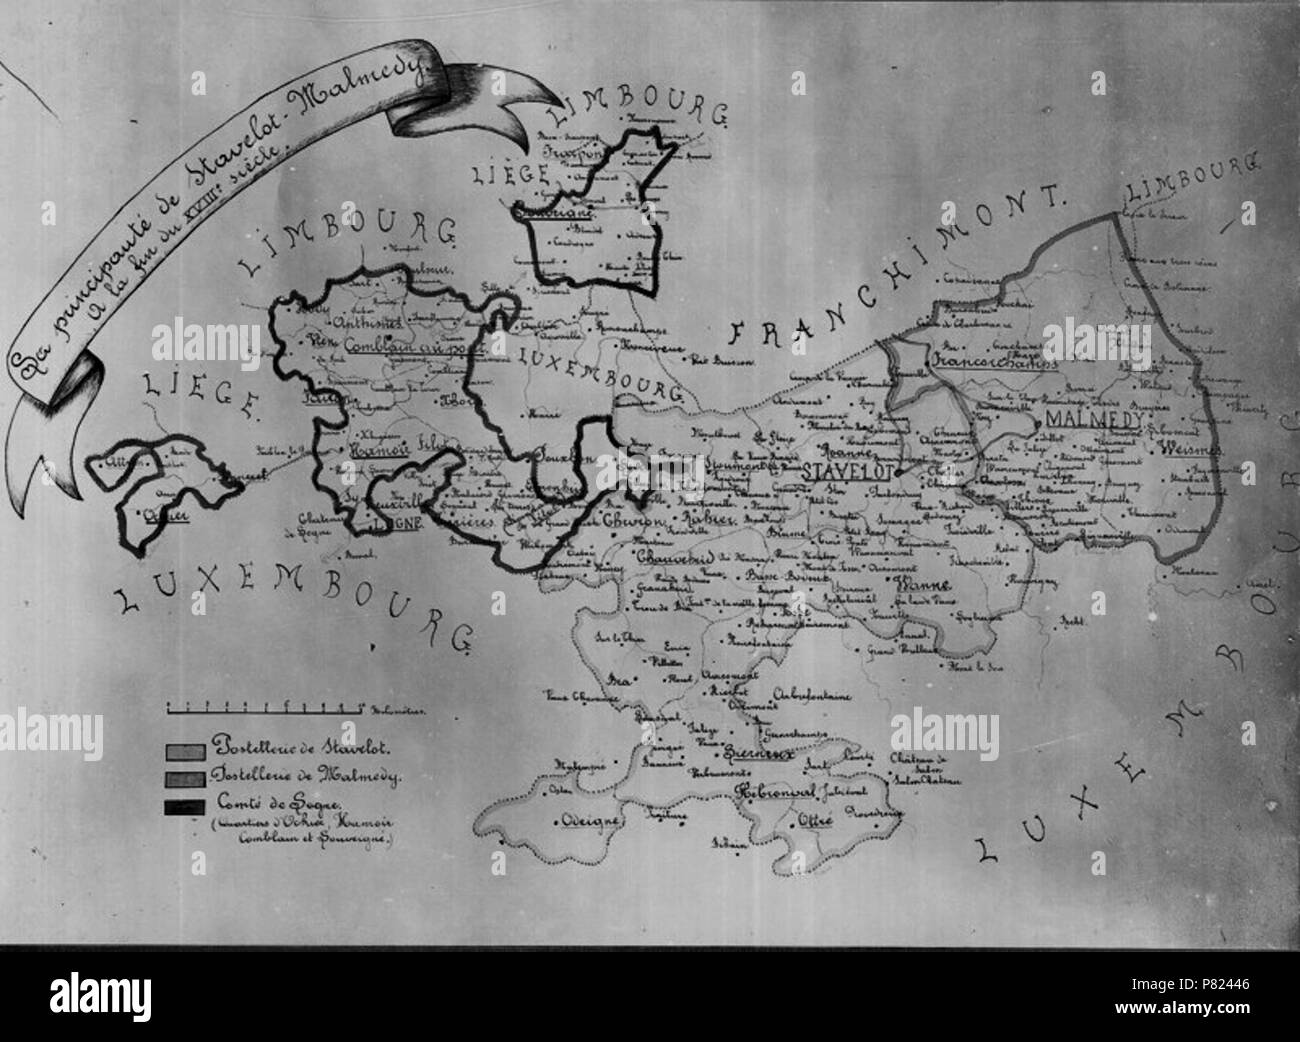 355 Stavelot-Malmédy map Stock Photo